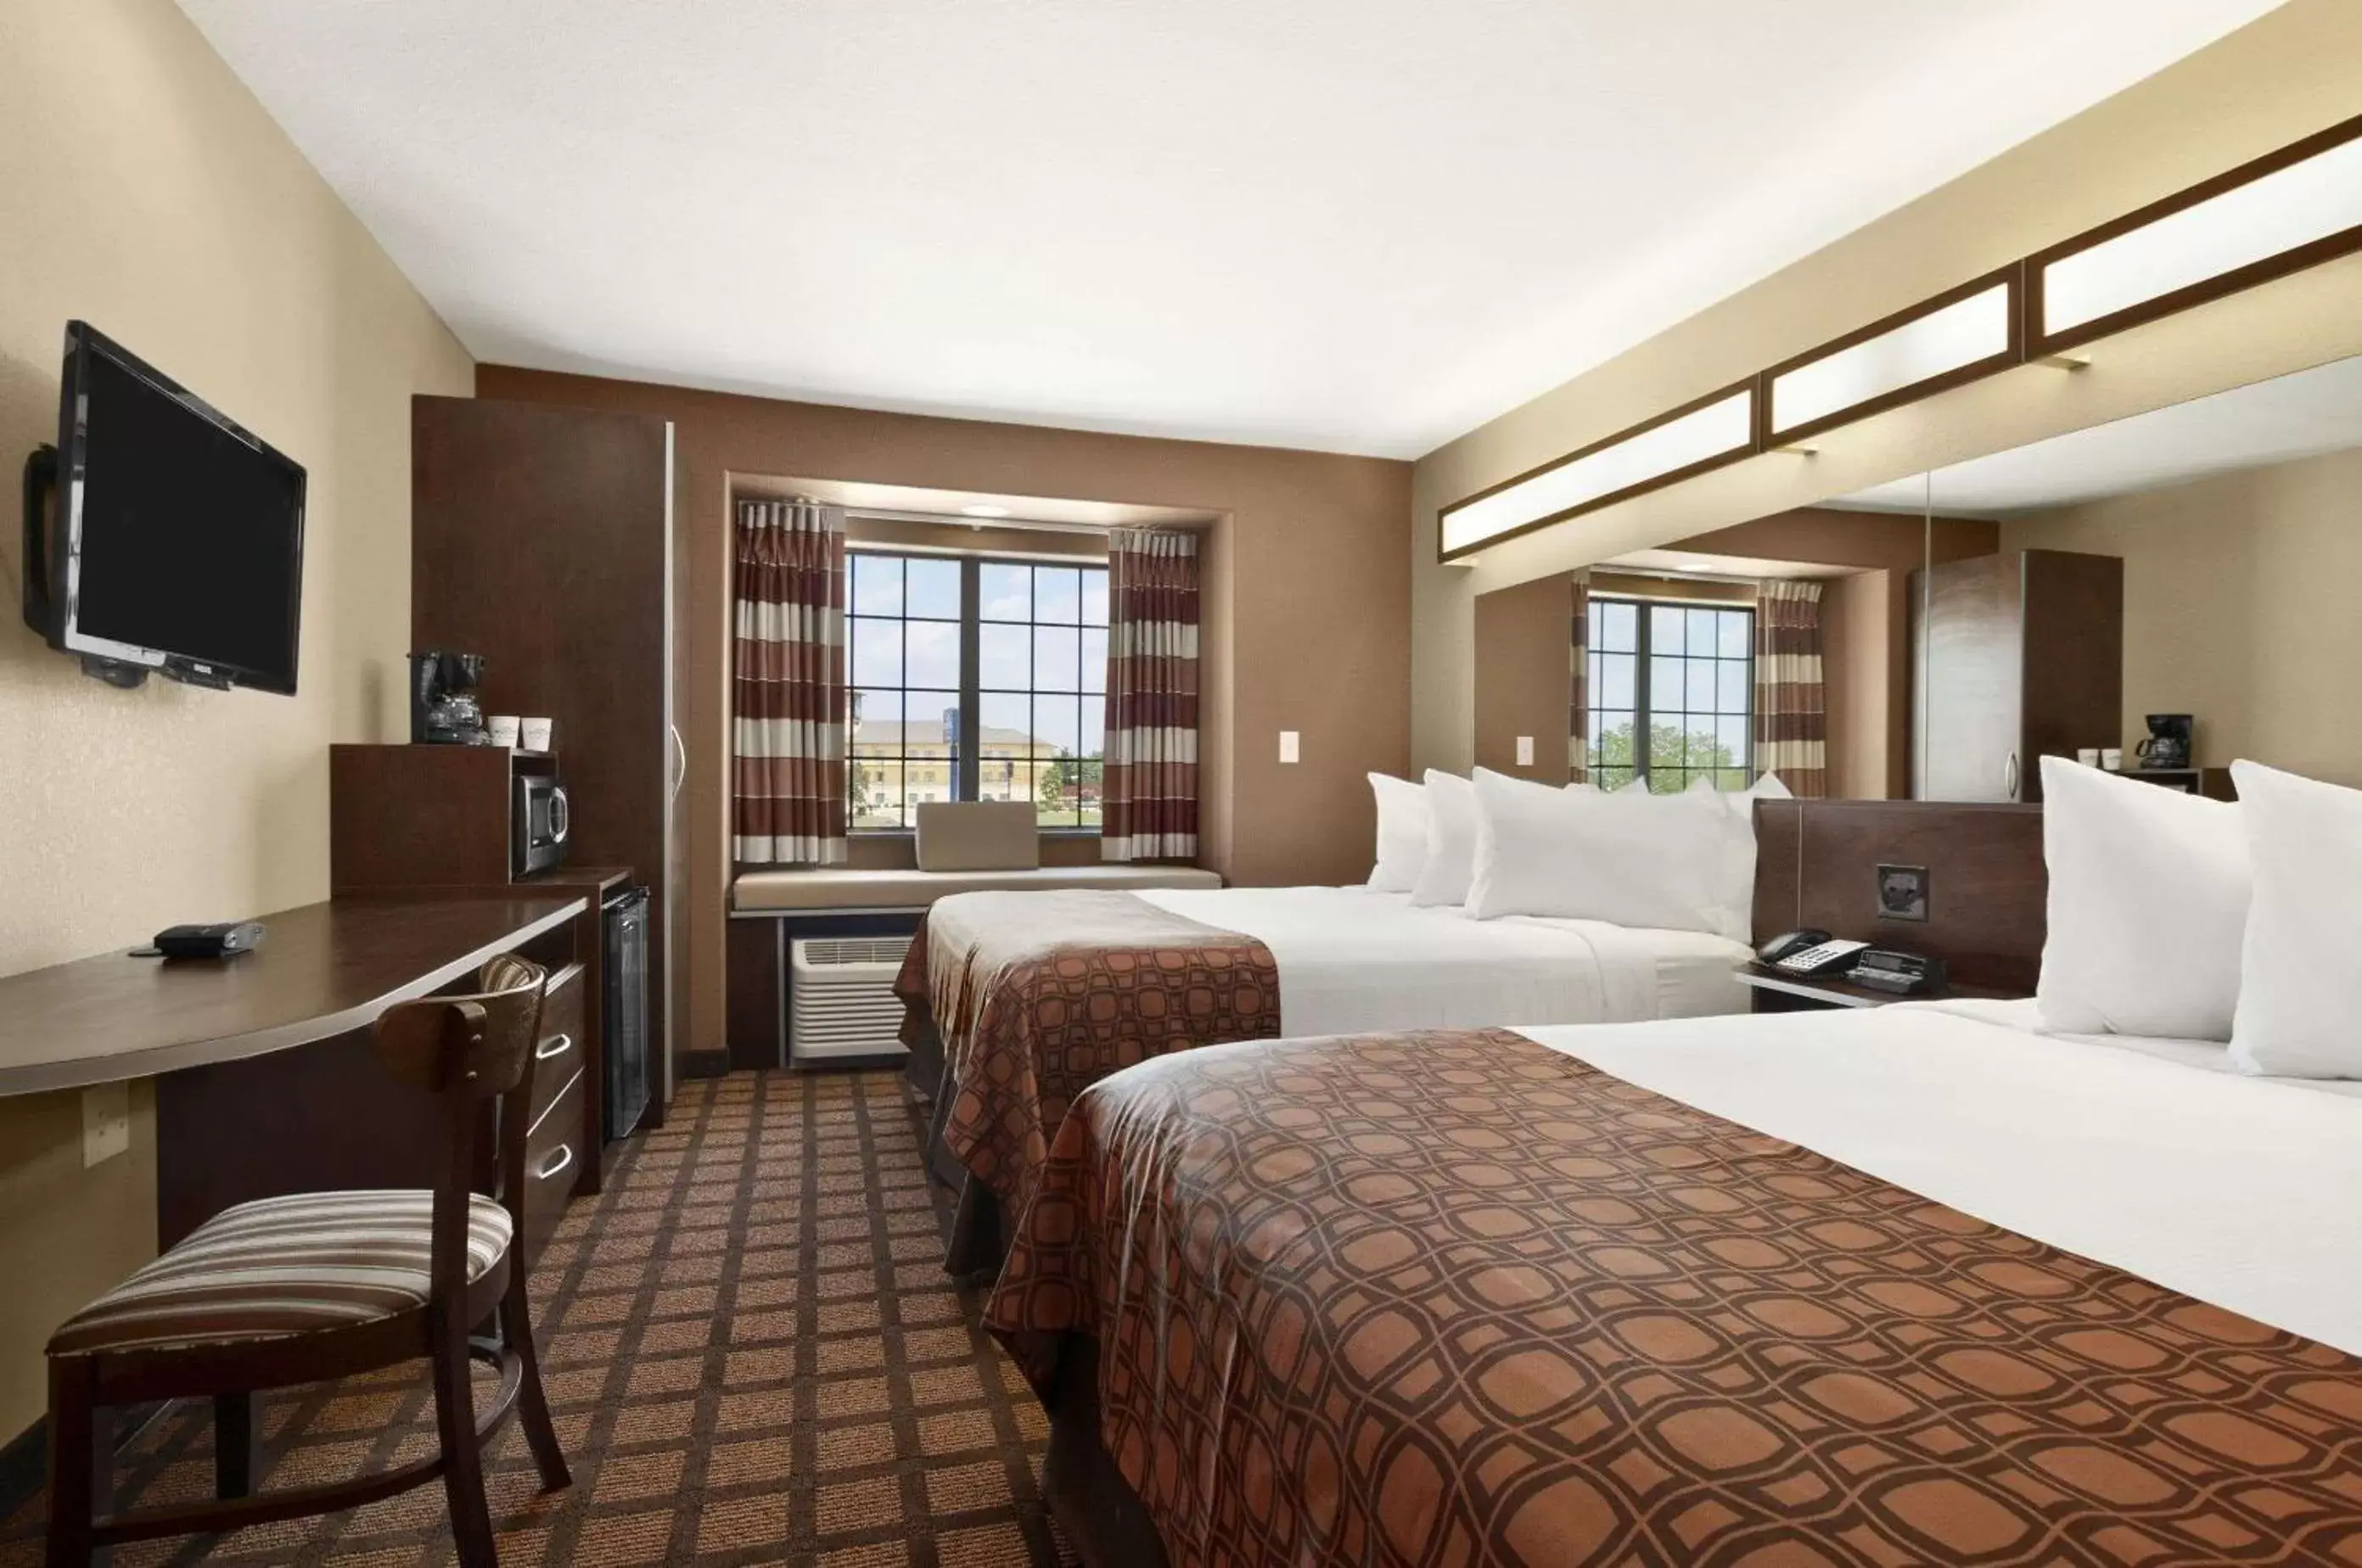 Bedroom in Microtel Inn & Suites Gonzales TX